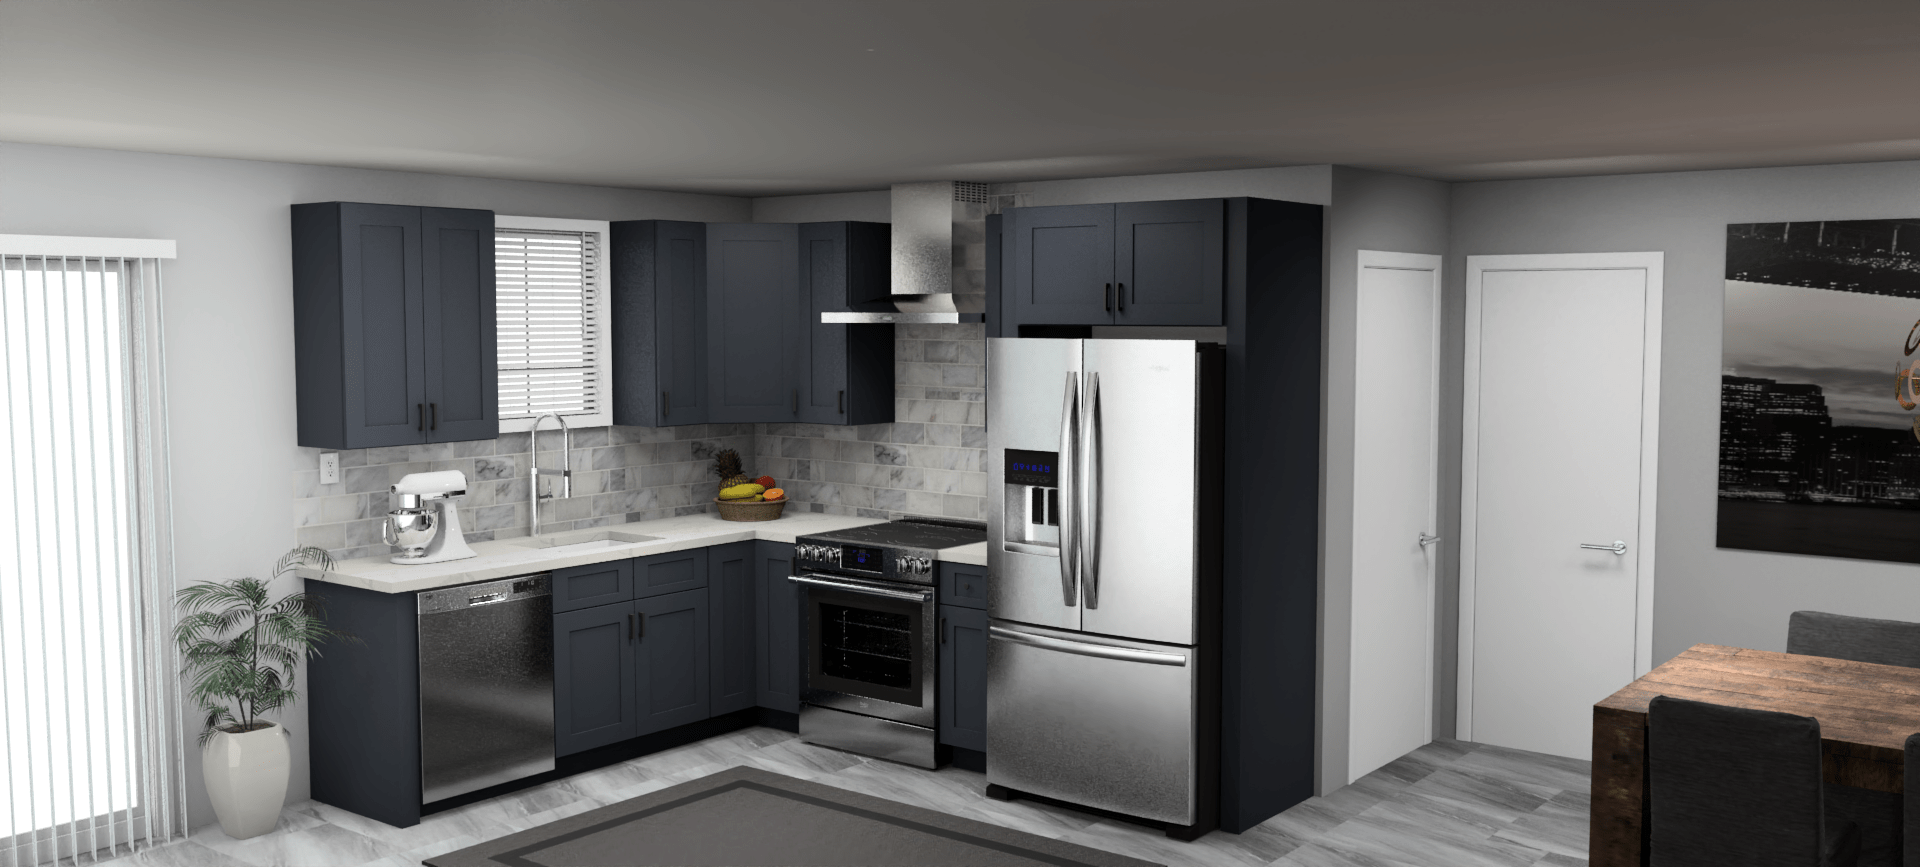 Fabuwood Allure Galaxy Indigo 8 x 10 L Shaped Kitchen Main Layout Photo